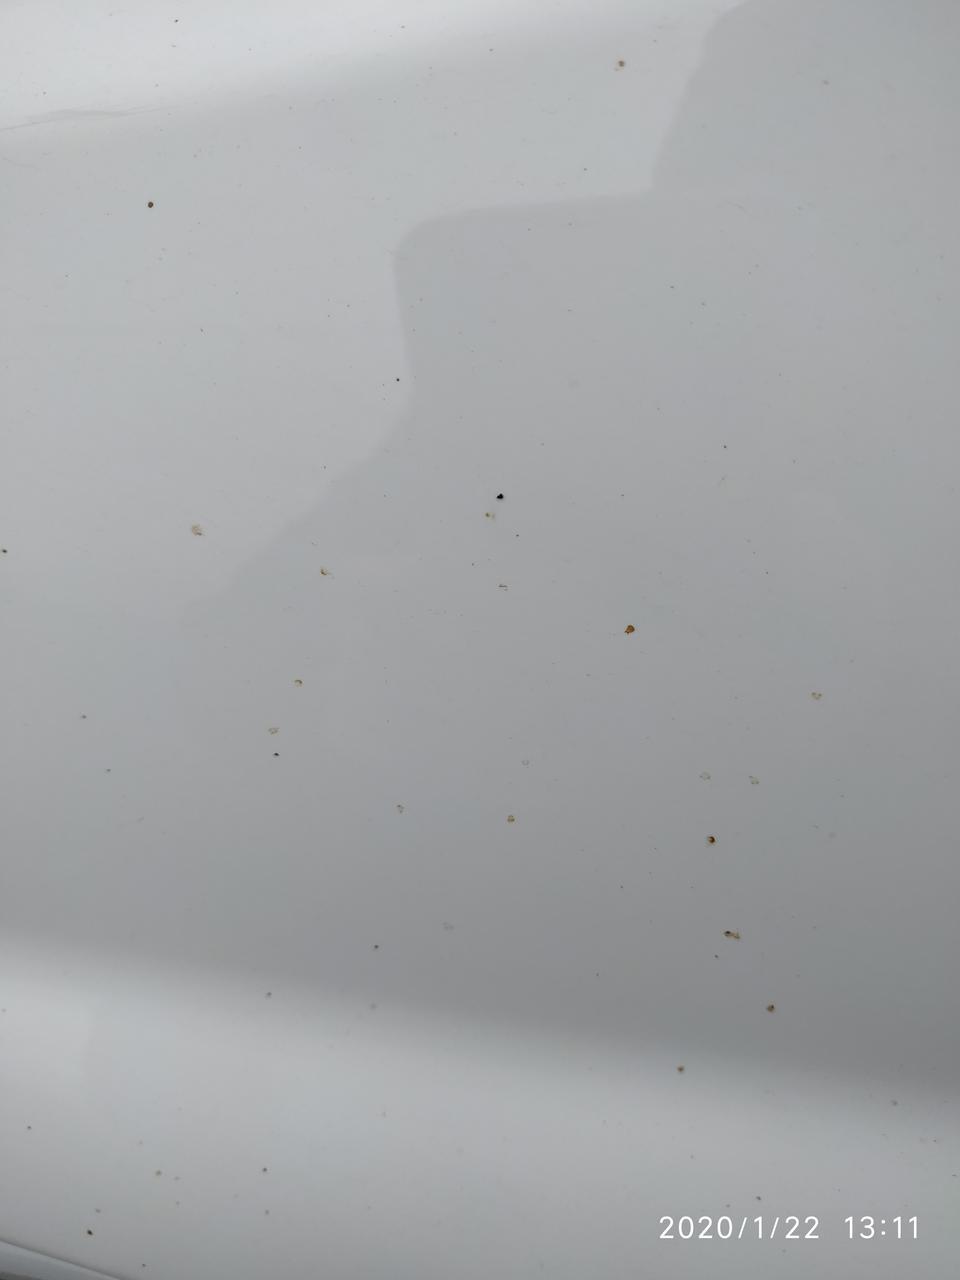 远景x6车身上的小黄点用什么方法可以擦掉？洗车店也没有好办法啊！